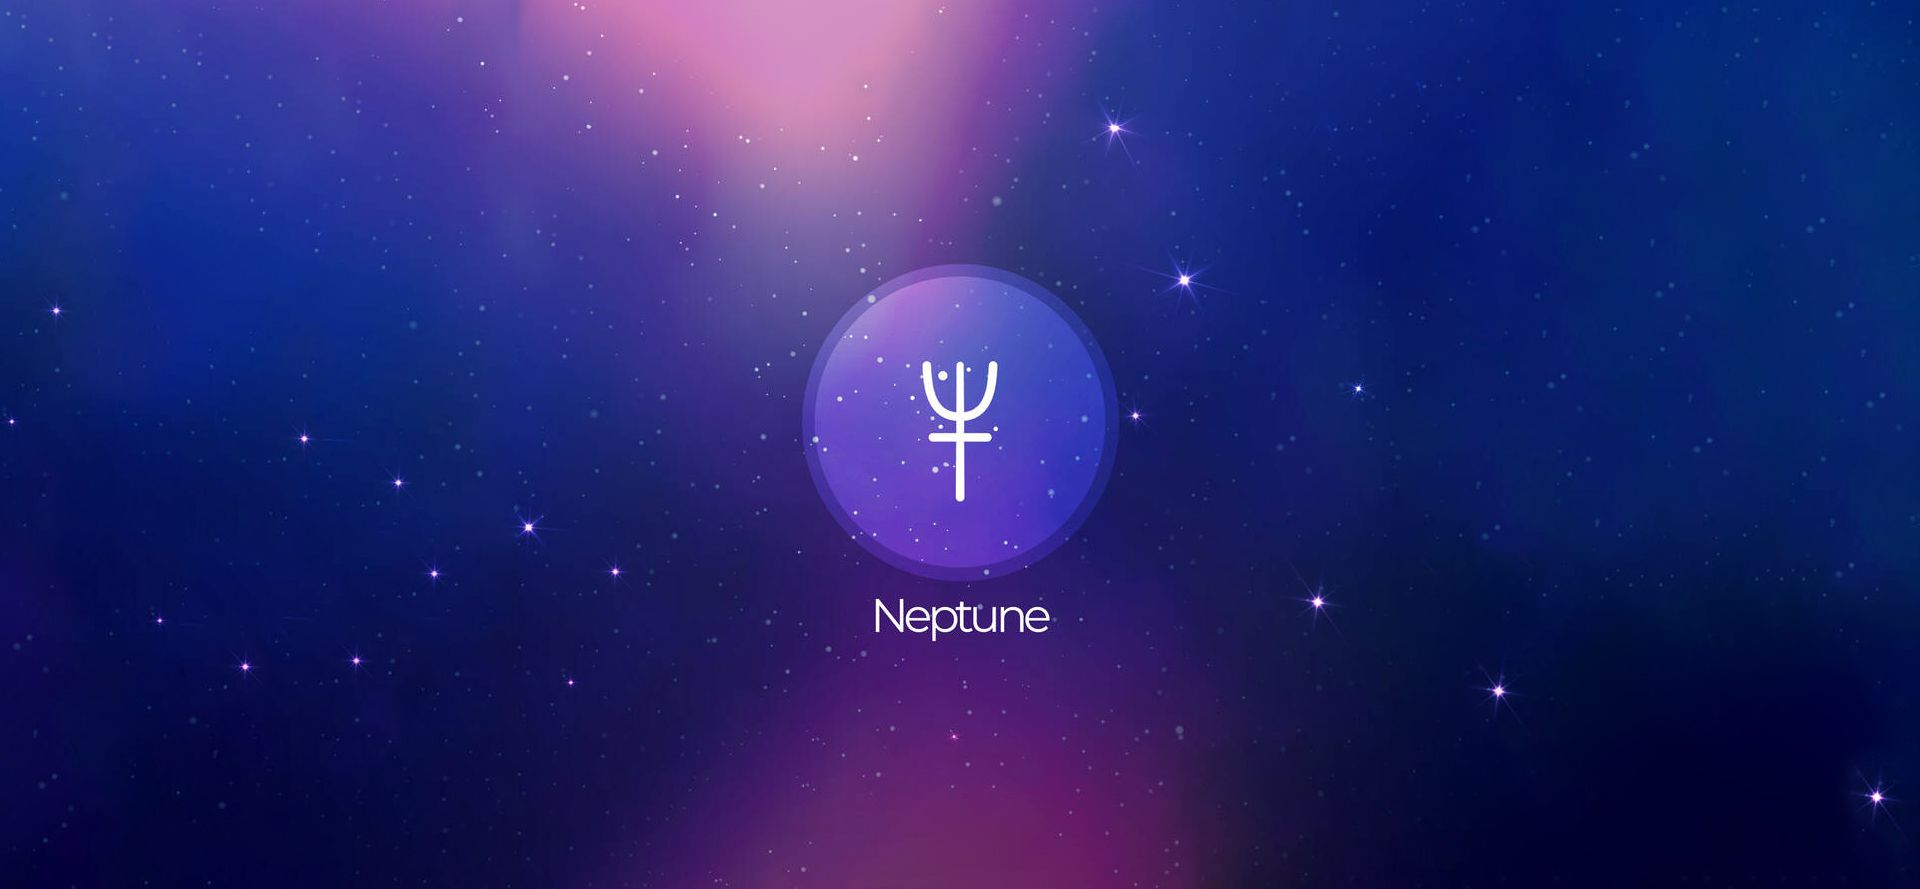 Neptune sign.